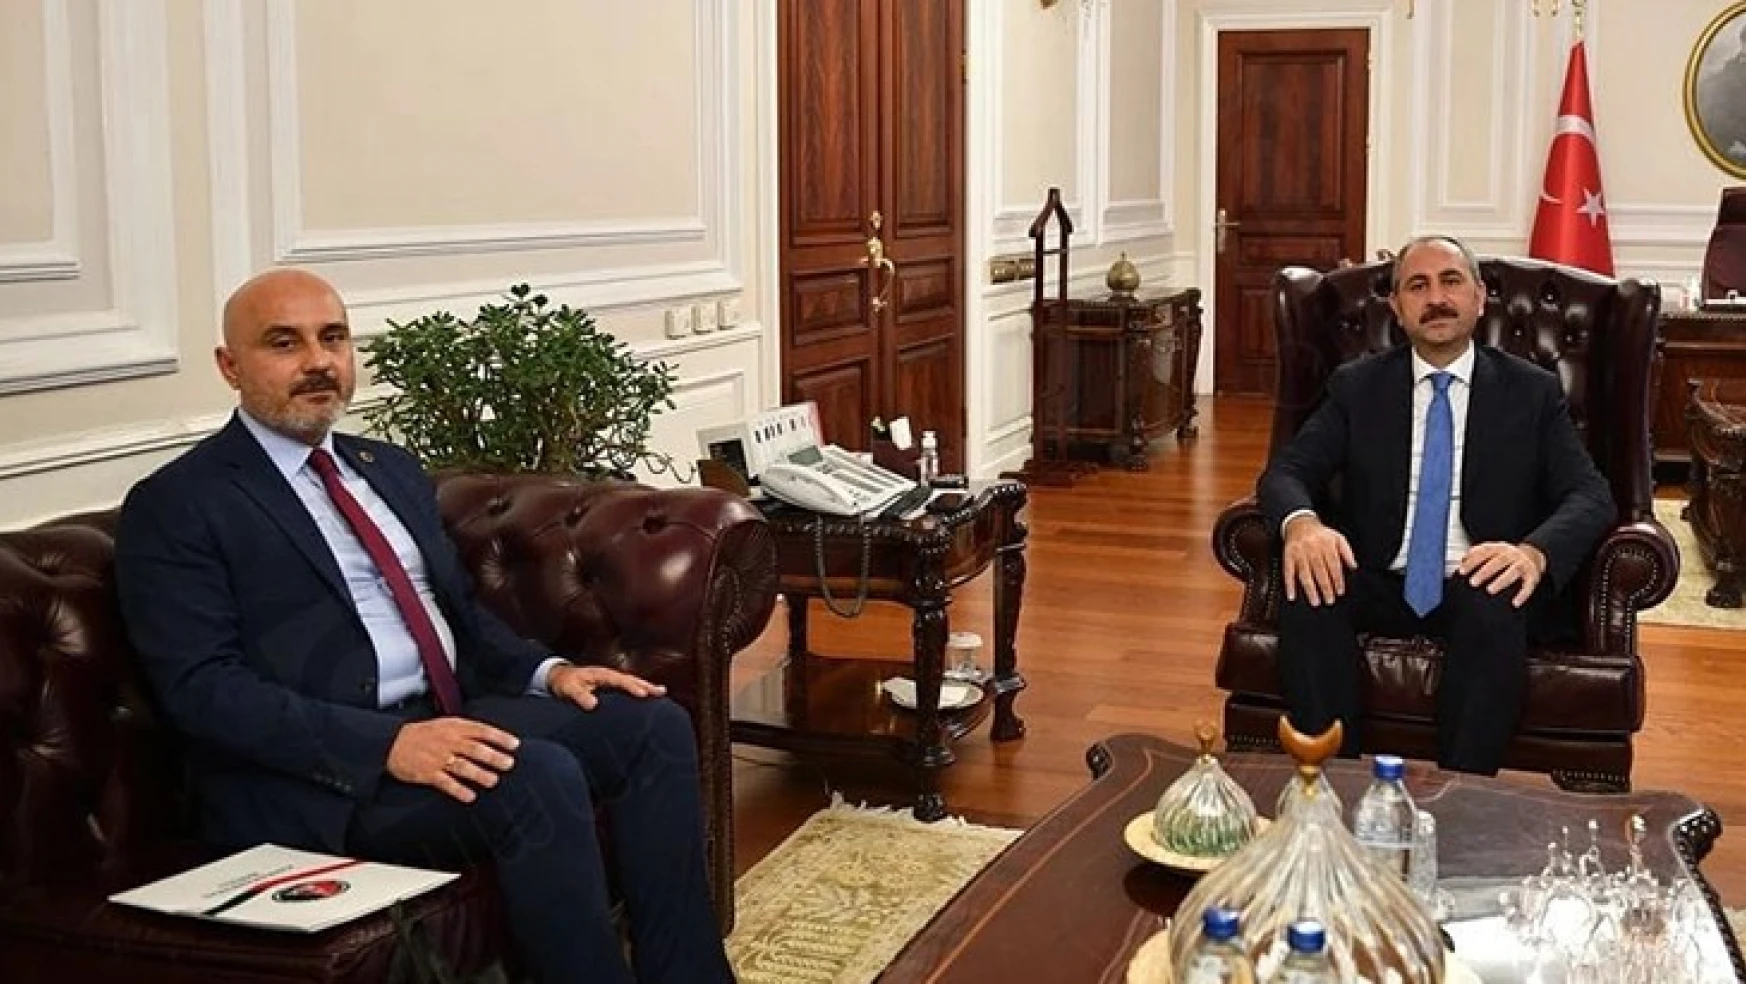 Kahramanmaraş Barosu Başkanı Gül, Adalet Bakanı ile özel görüştü